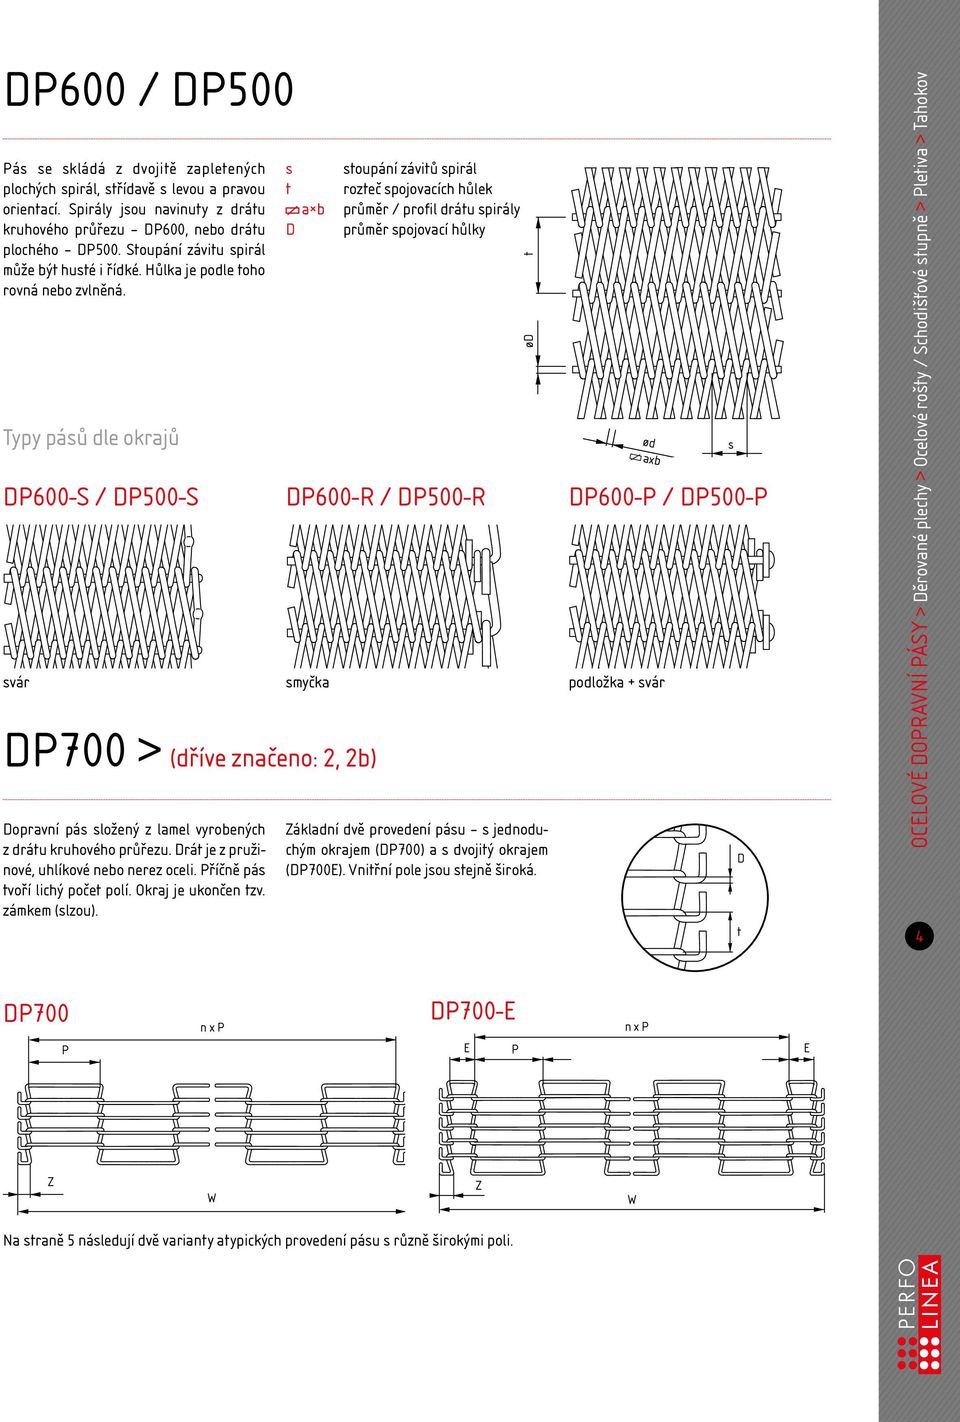 Typy páů dle okrajů a b D oupání záviů pirál rozeč pojovacích hůlek průměr / profil dráu pirály průměr pojovací hůlky DP600-S / DP500-S DP600-R / DP500-R DP600-P / DP500-P vár myčka podložka + vár